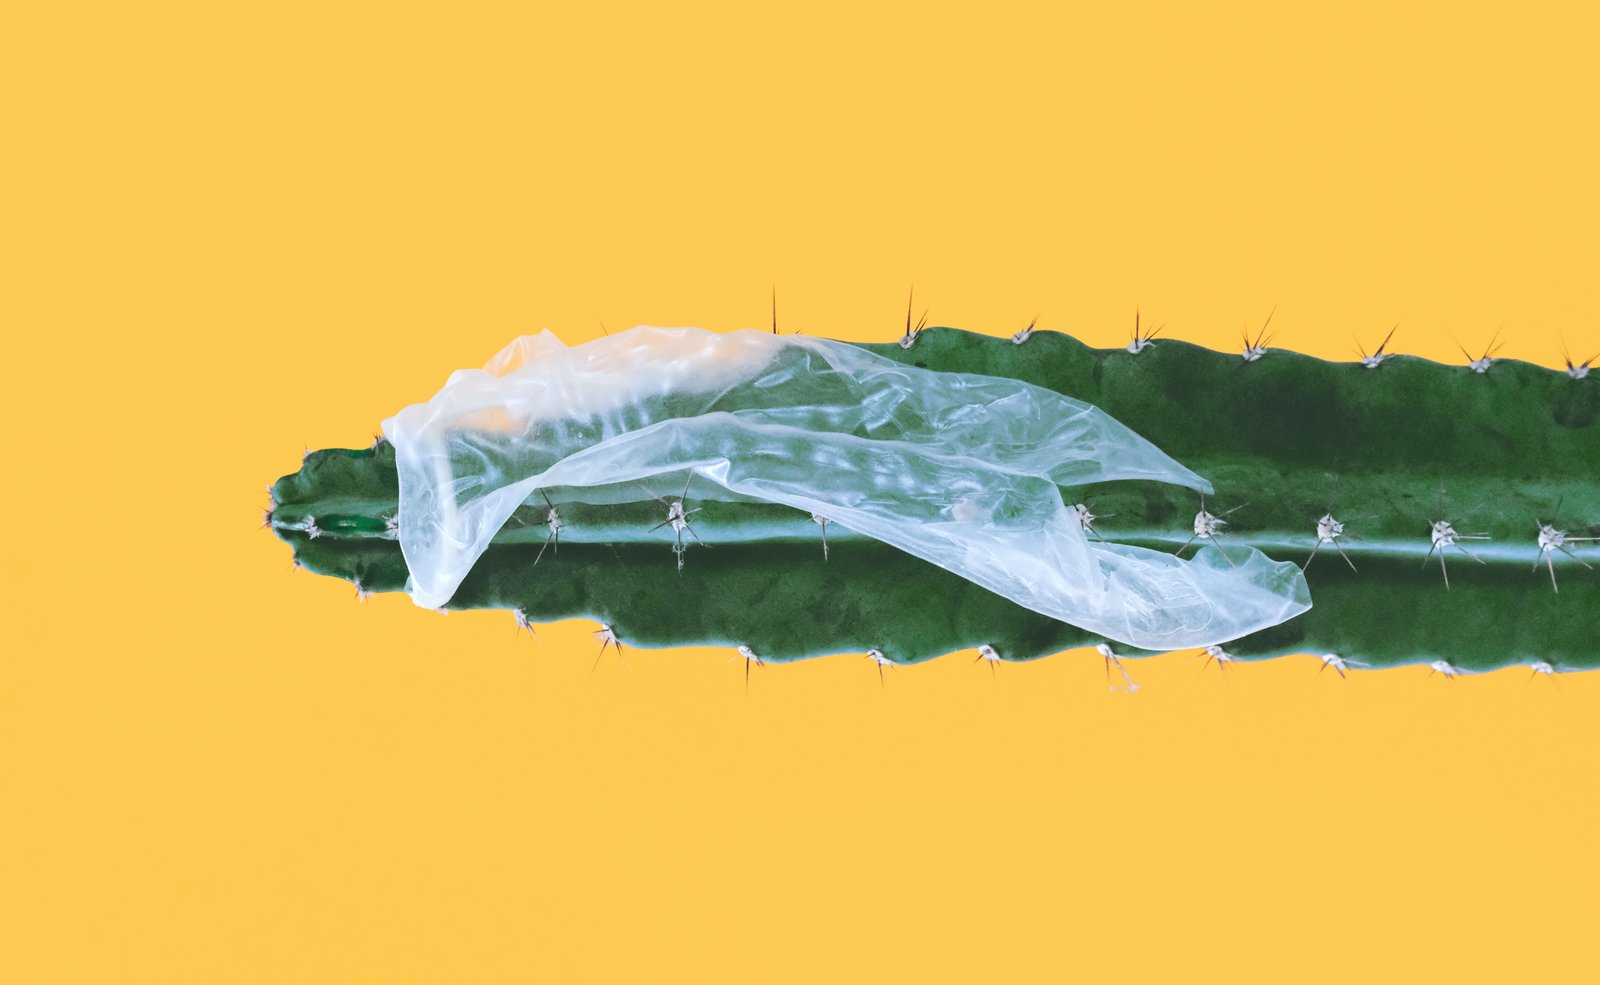 Сломанный презерватив застрял на кактусе